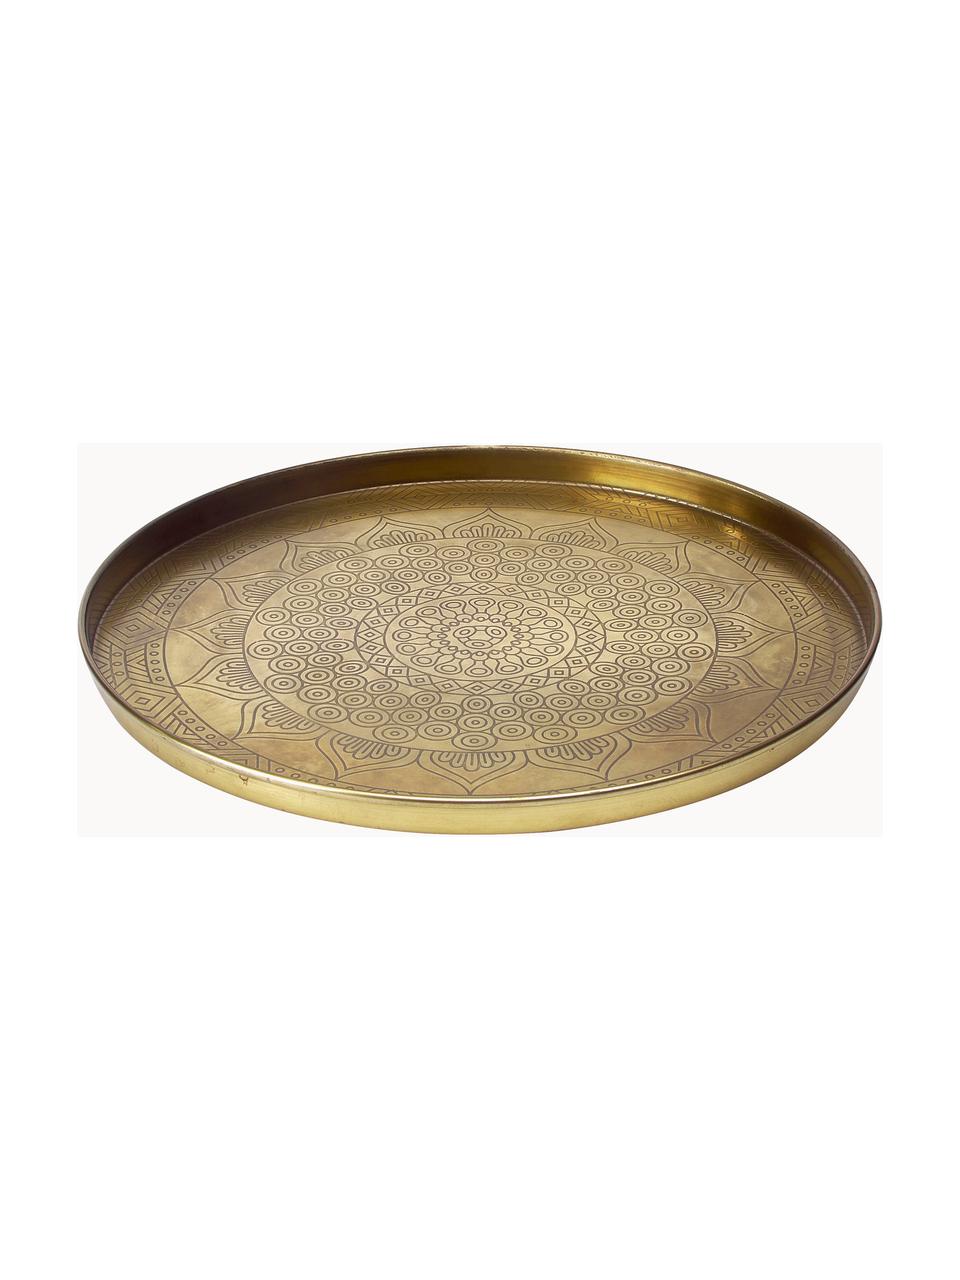 Grosses Deko-Tablett Conan aus Metall, Metall, beschichtet, Goldfarben, Ø 40 cm